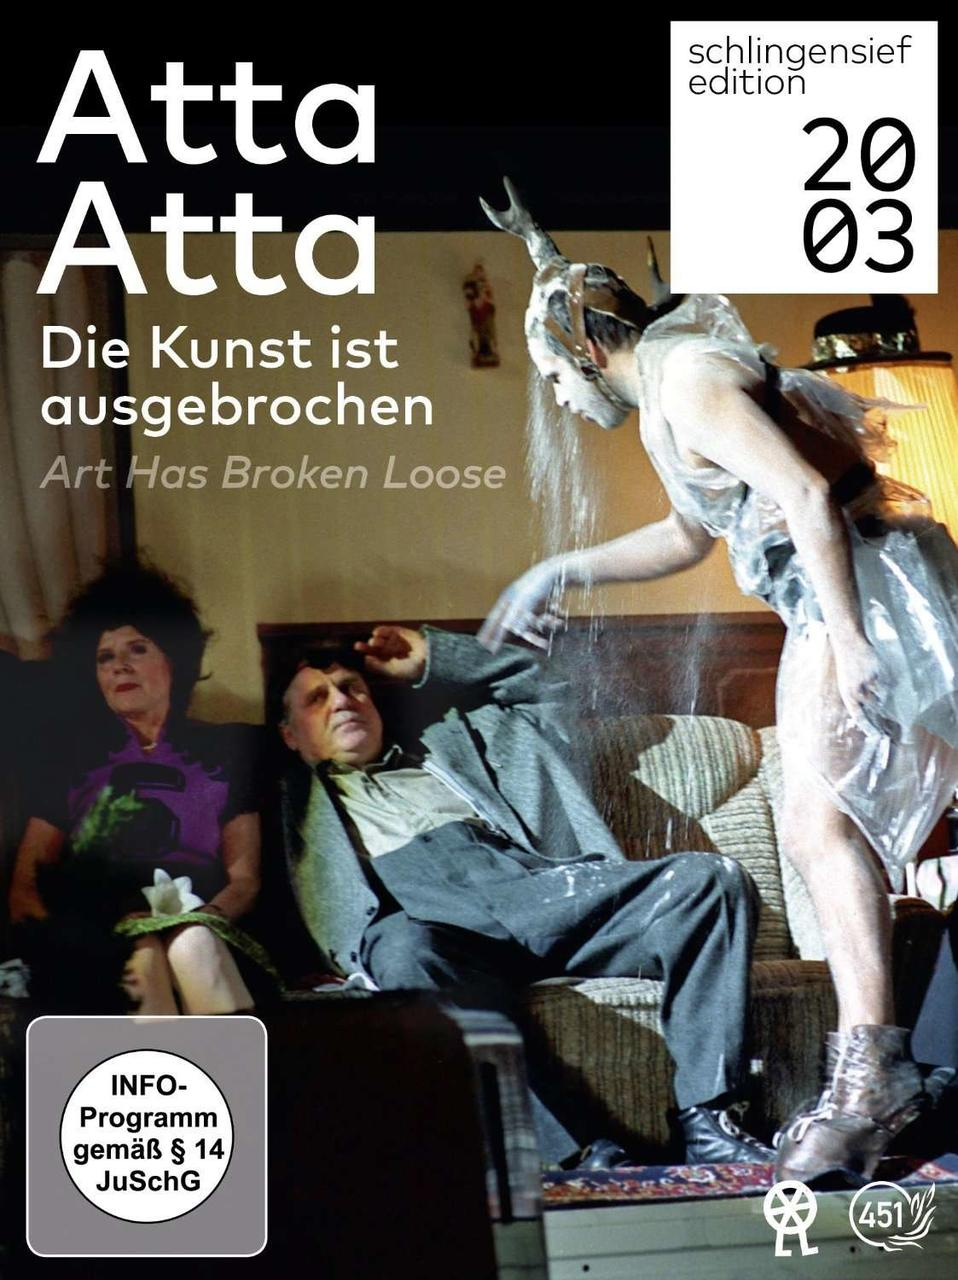 Atta Atta - Die Kunst / Art ausgebrochen ist broken loose DVD has